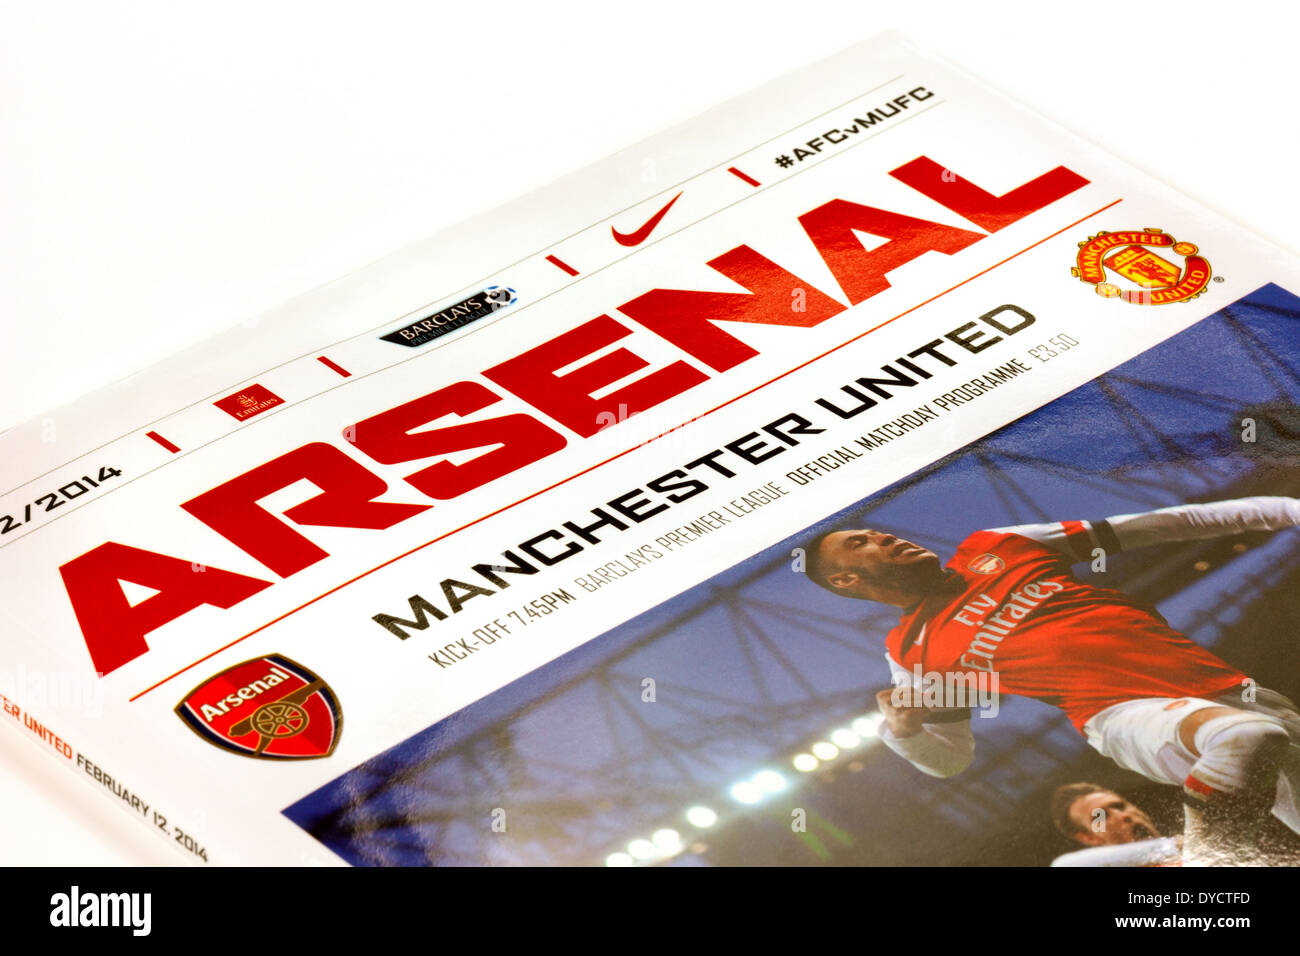 Arsenal Vs Manchester United Premier League Fußball match Programm ab der Saison 2013 / 2014 Premier League England Stockfoto